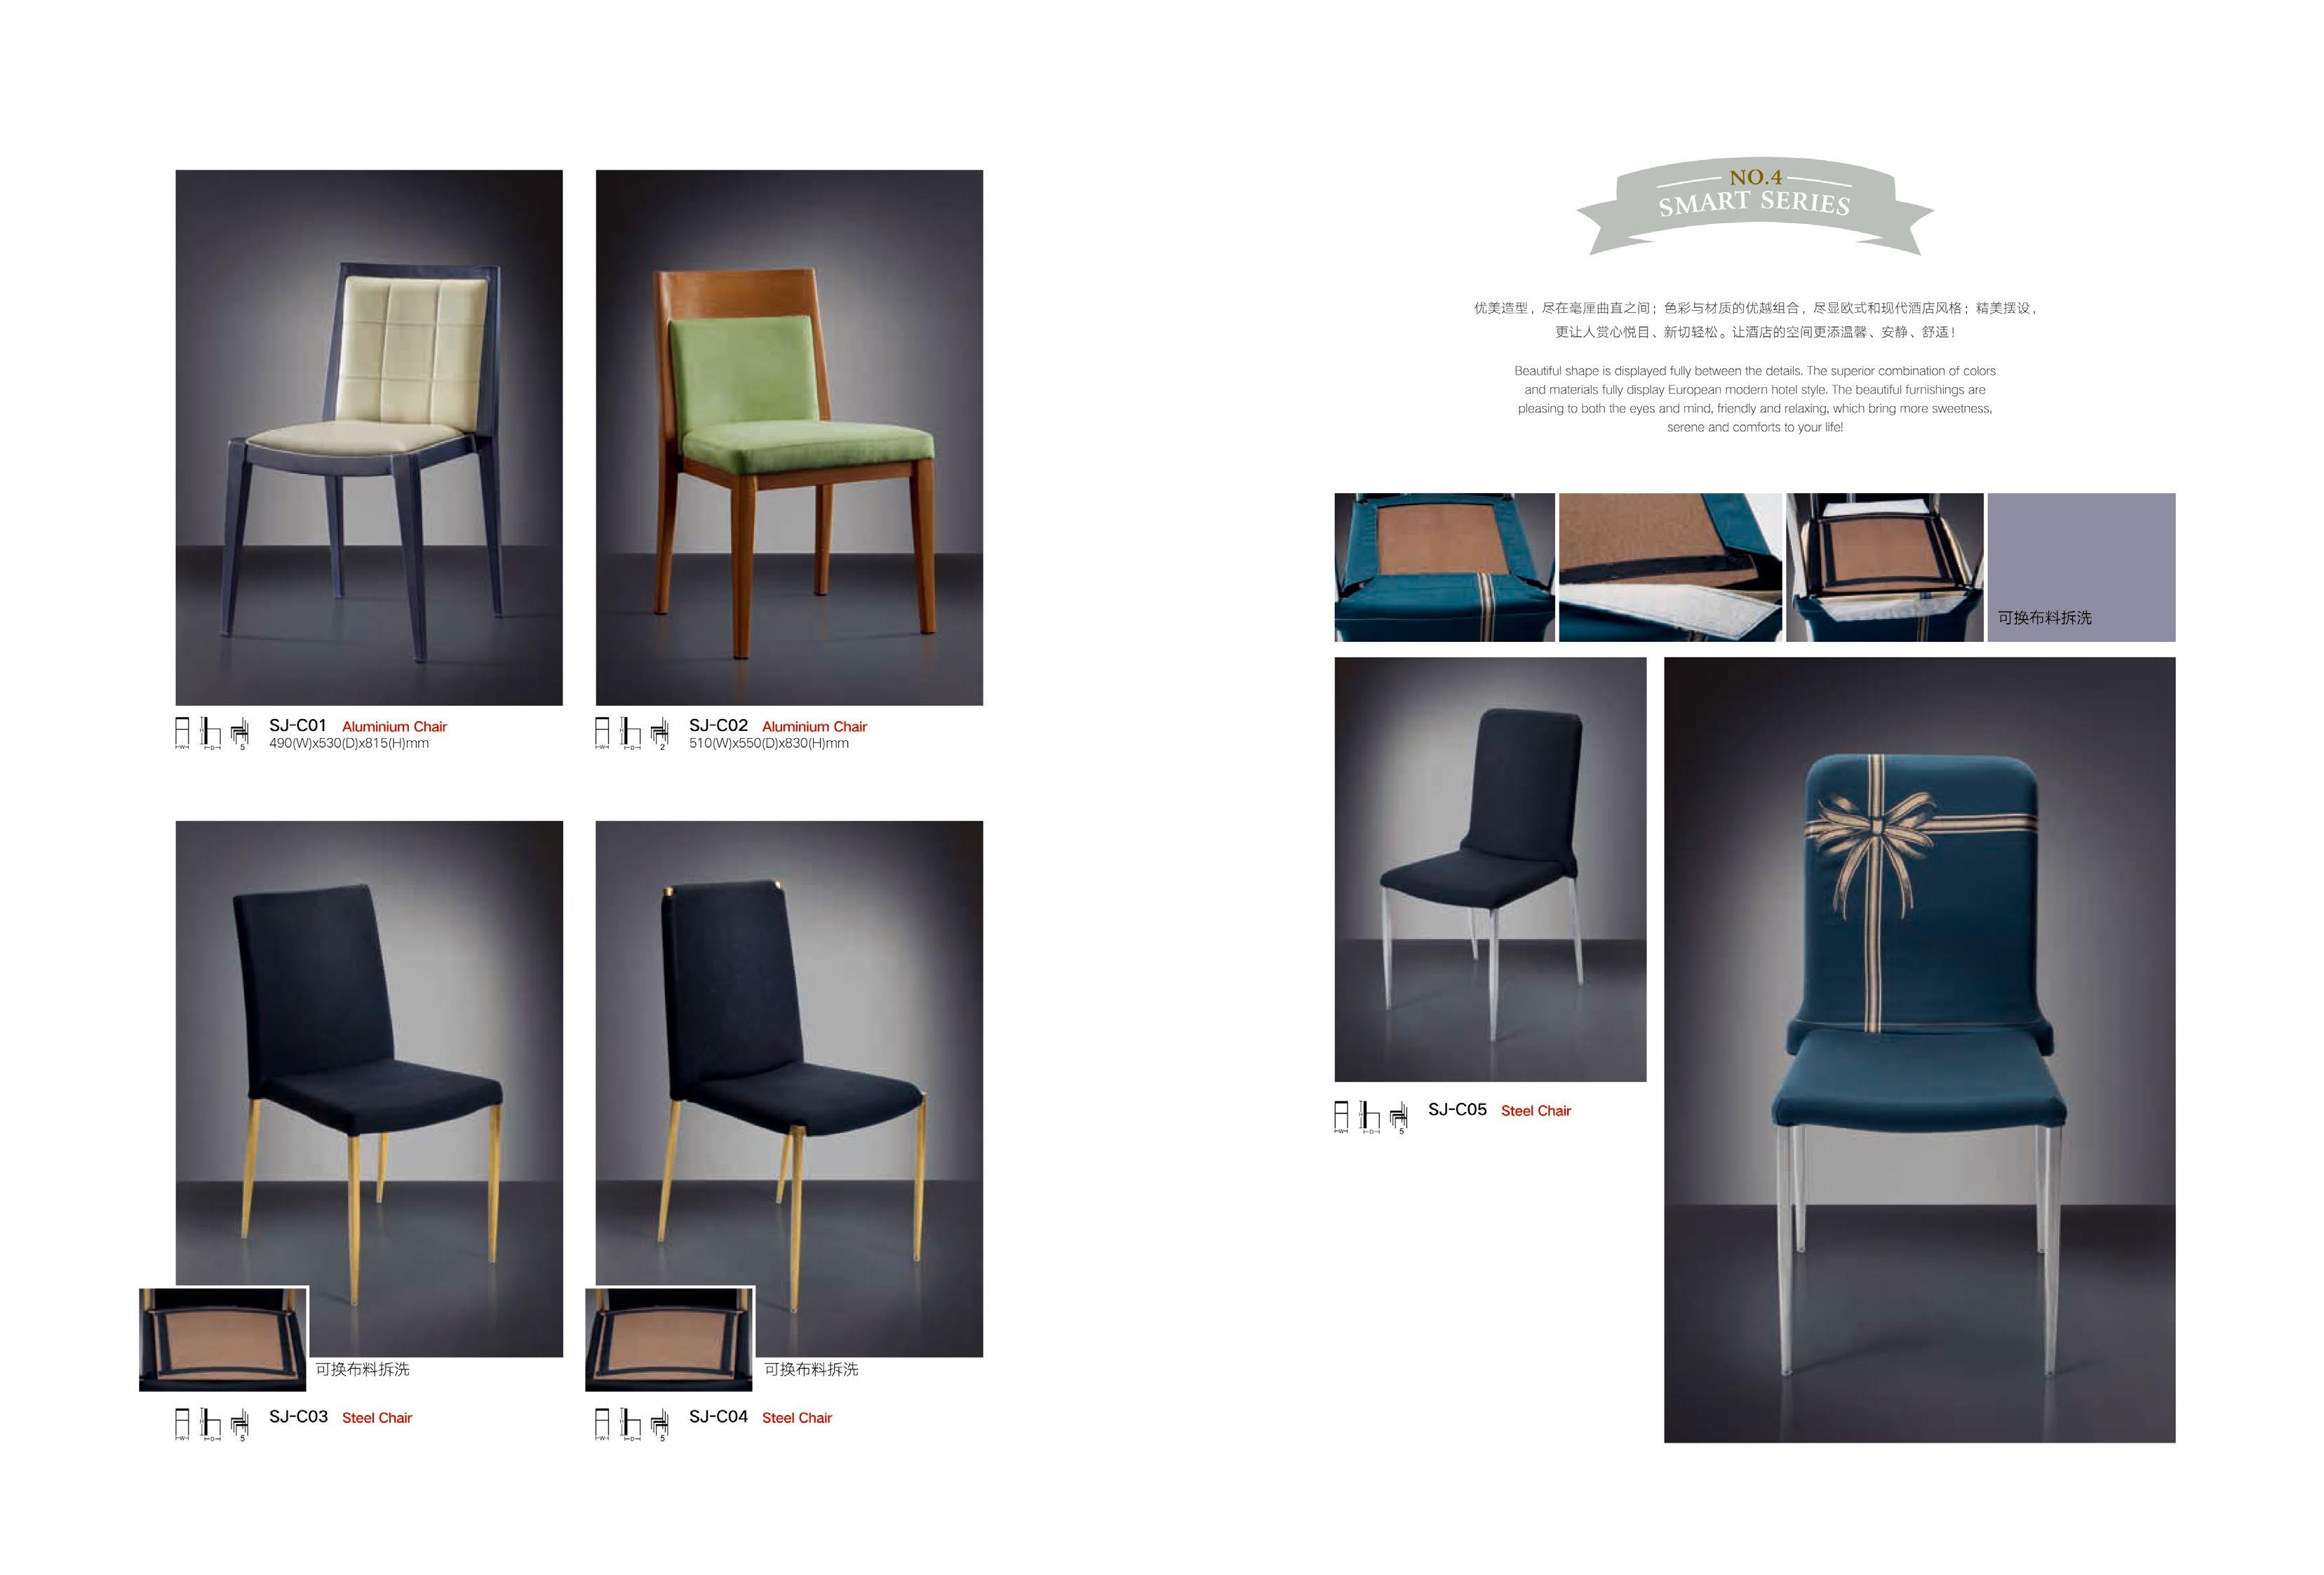 beat365亚洲官网酒店家具 北欧休闲椅子 创意家具餐椅 酒店椅子时尚简约家用餐椅